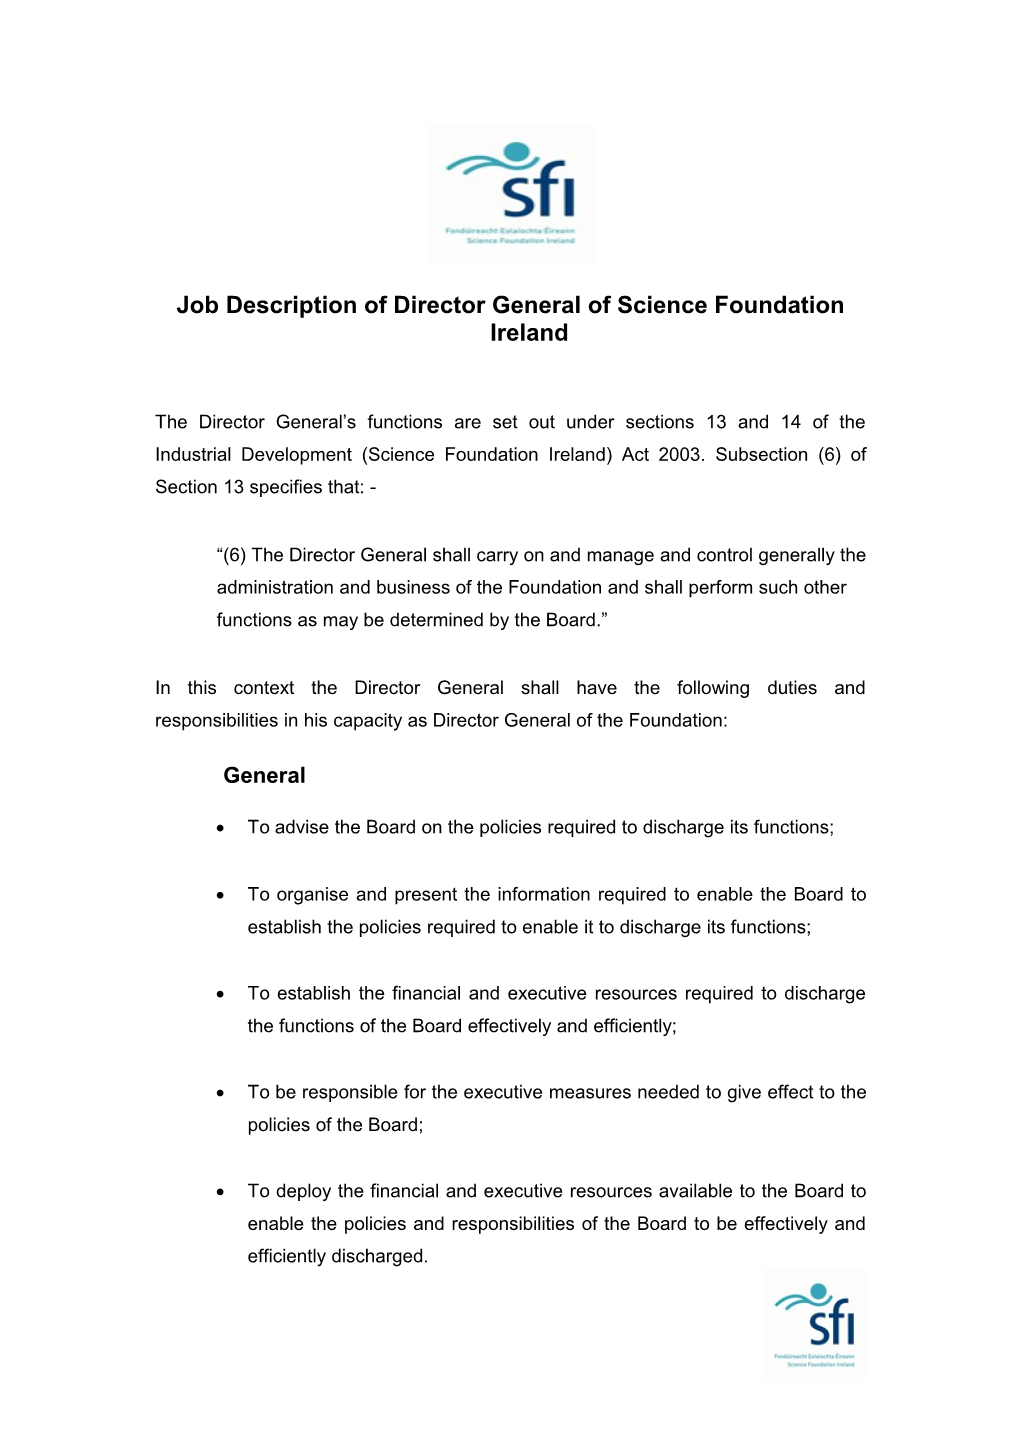 Job Description Director General of Science Foundation Ireland